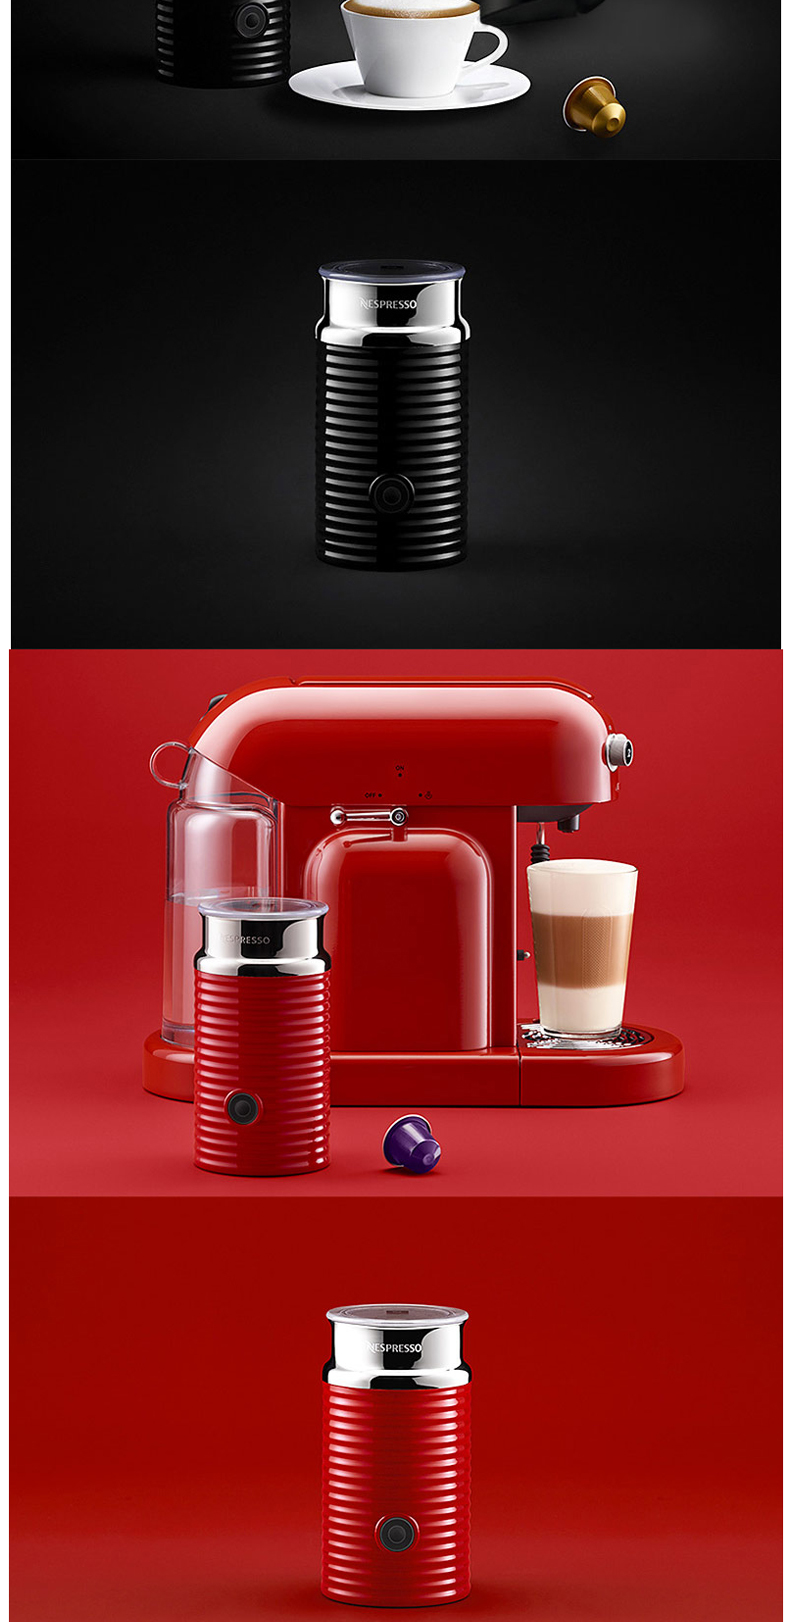 奈斯派索 Nespresso Aeroccino 3 全自动奶泡机 (白色)